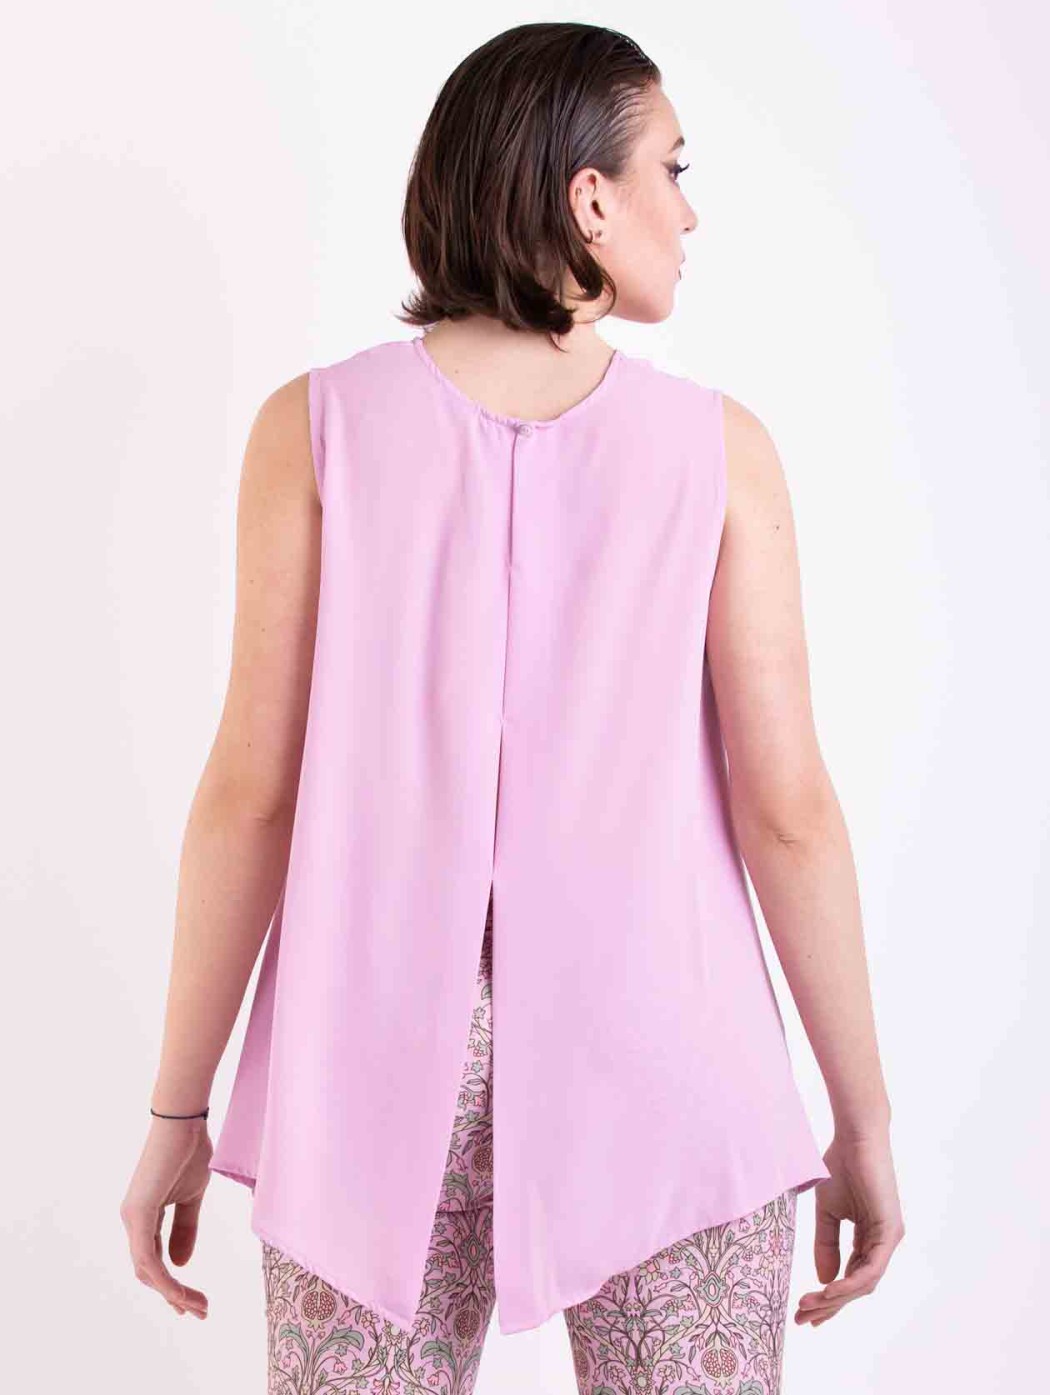 Maesta Milano pink silk top...